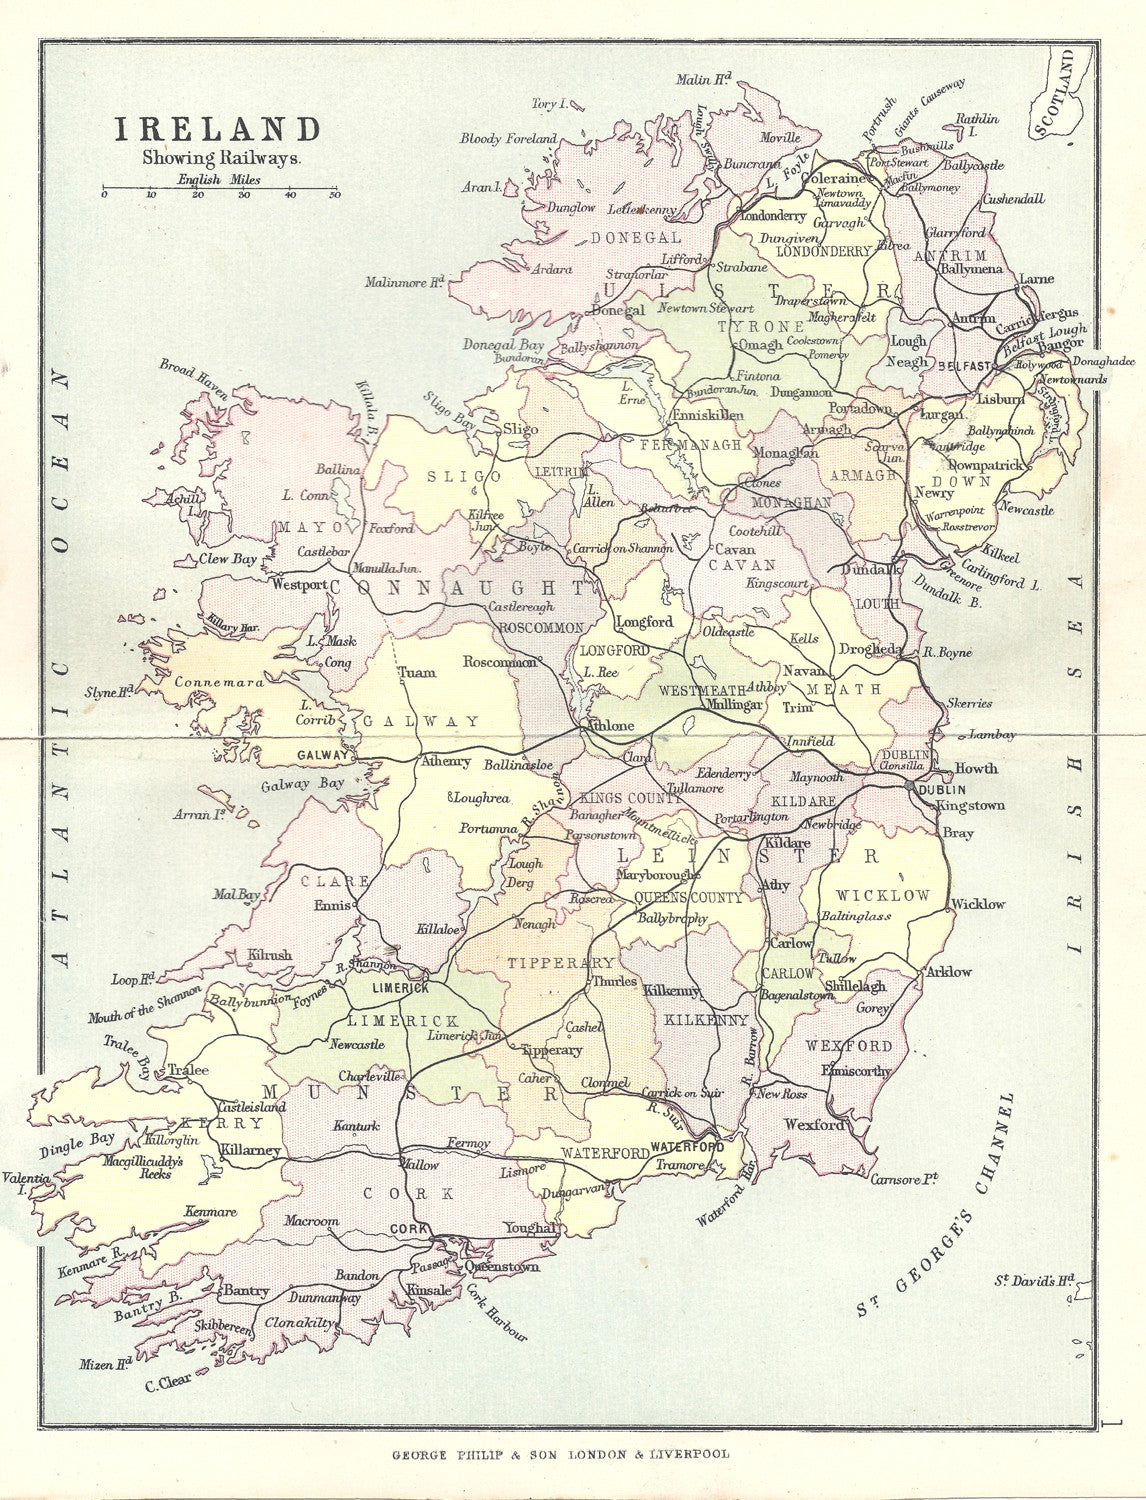 Ireland antique map showing railways published 1890